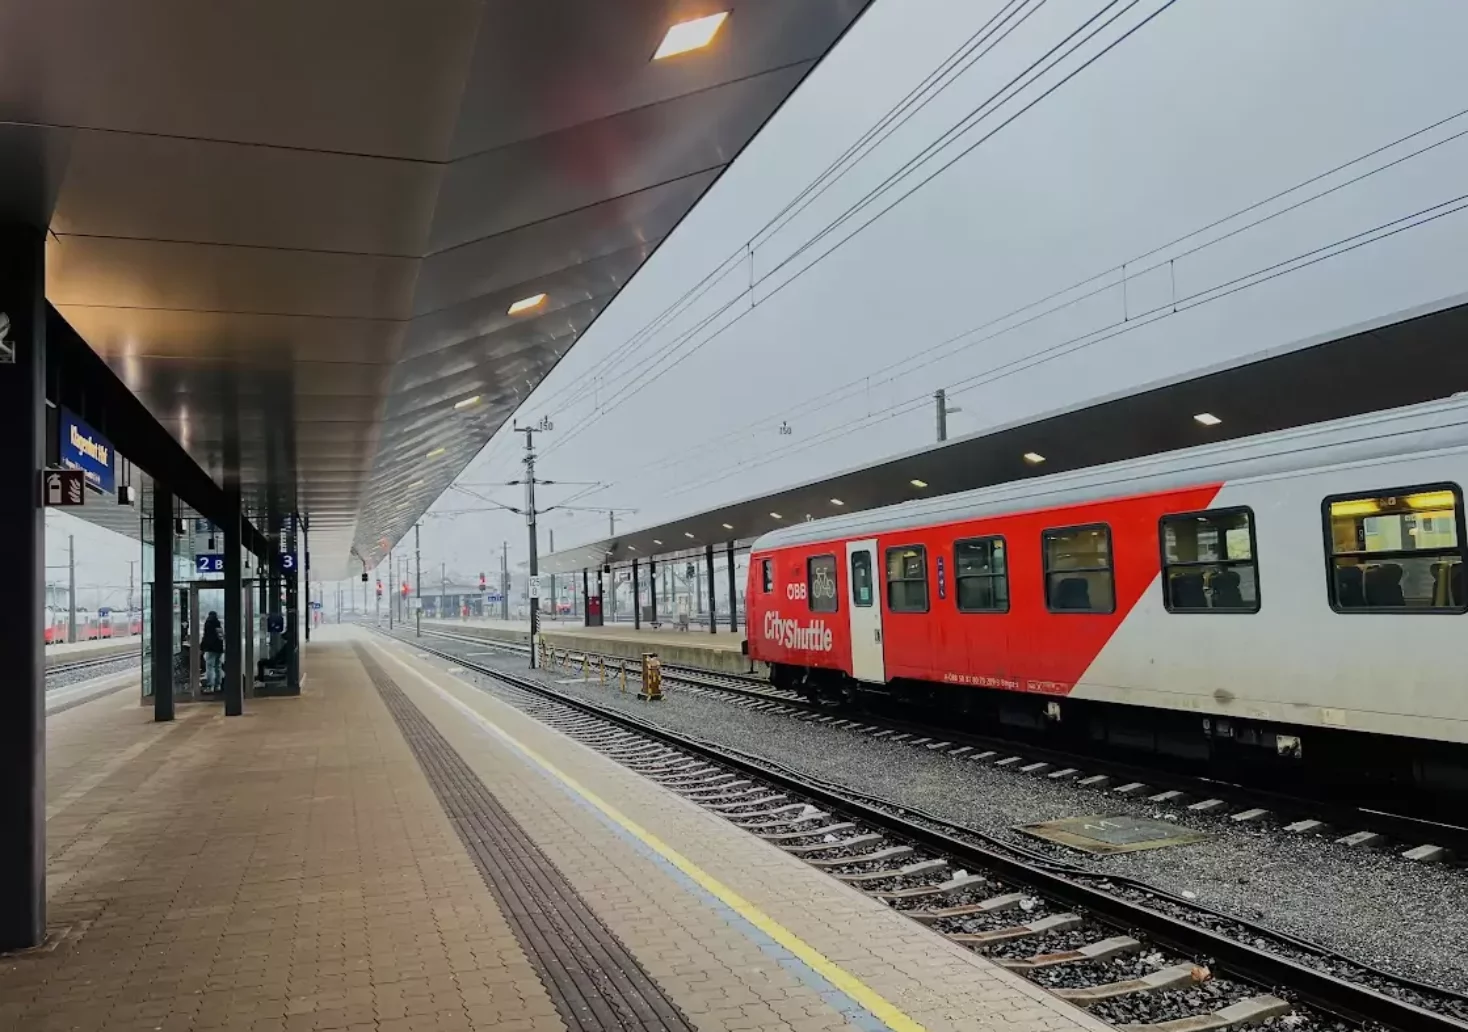 Foto in Beitrag von 5min.at: Zu sehen ist der Klagenfurter Hauptbahnhof und ein Zug.